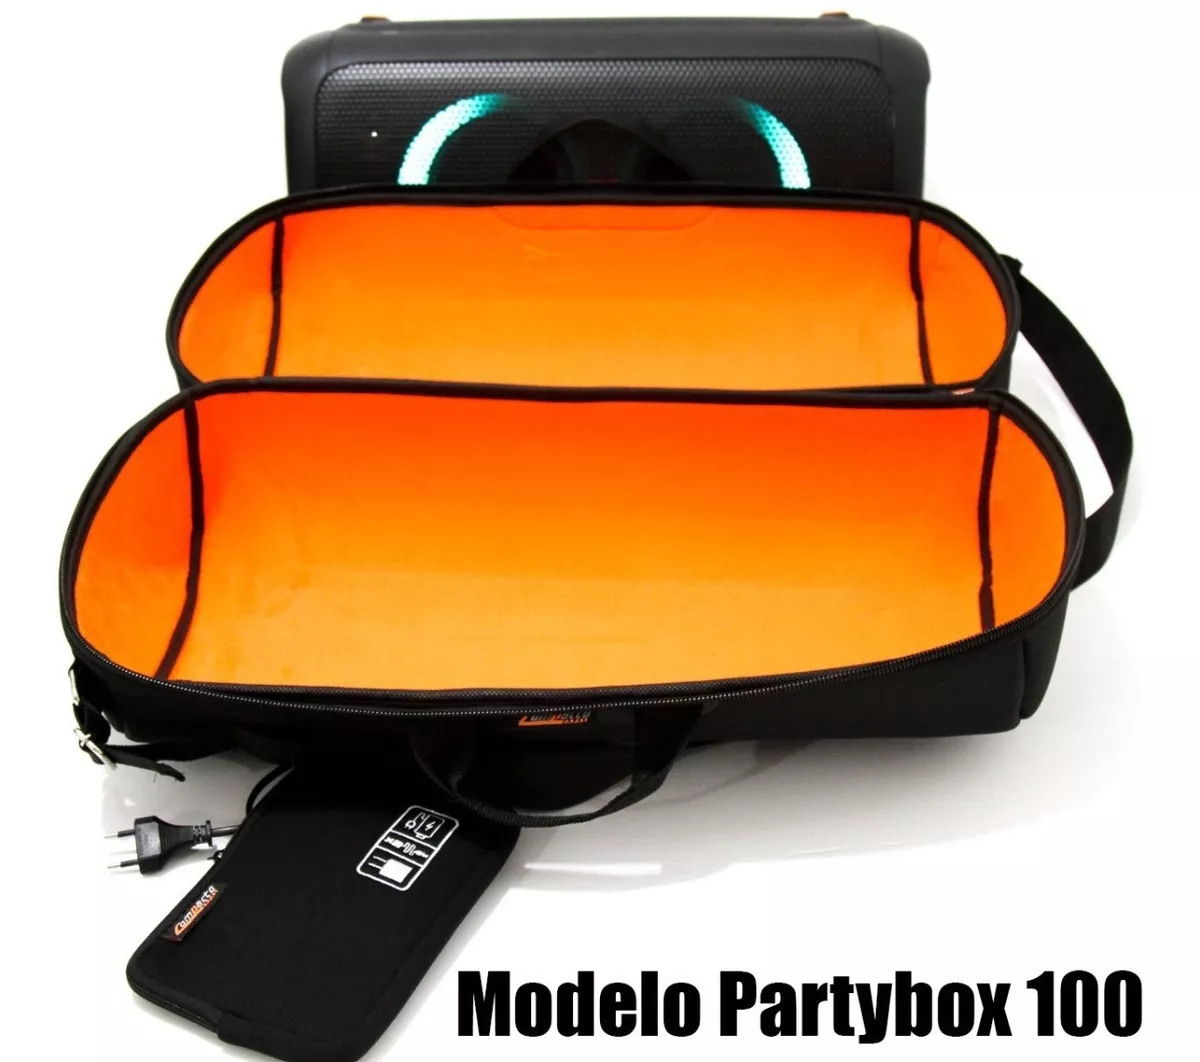 Case Capa Bag Jbl Partybox 100 A Prova D´agua 100% Top+etj